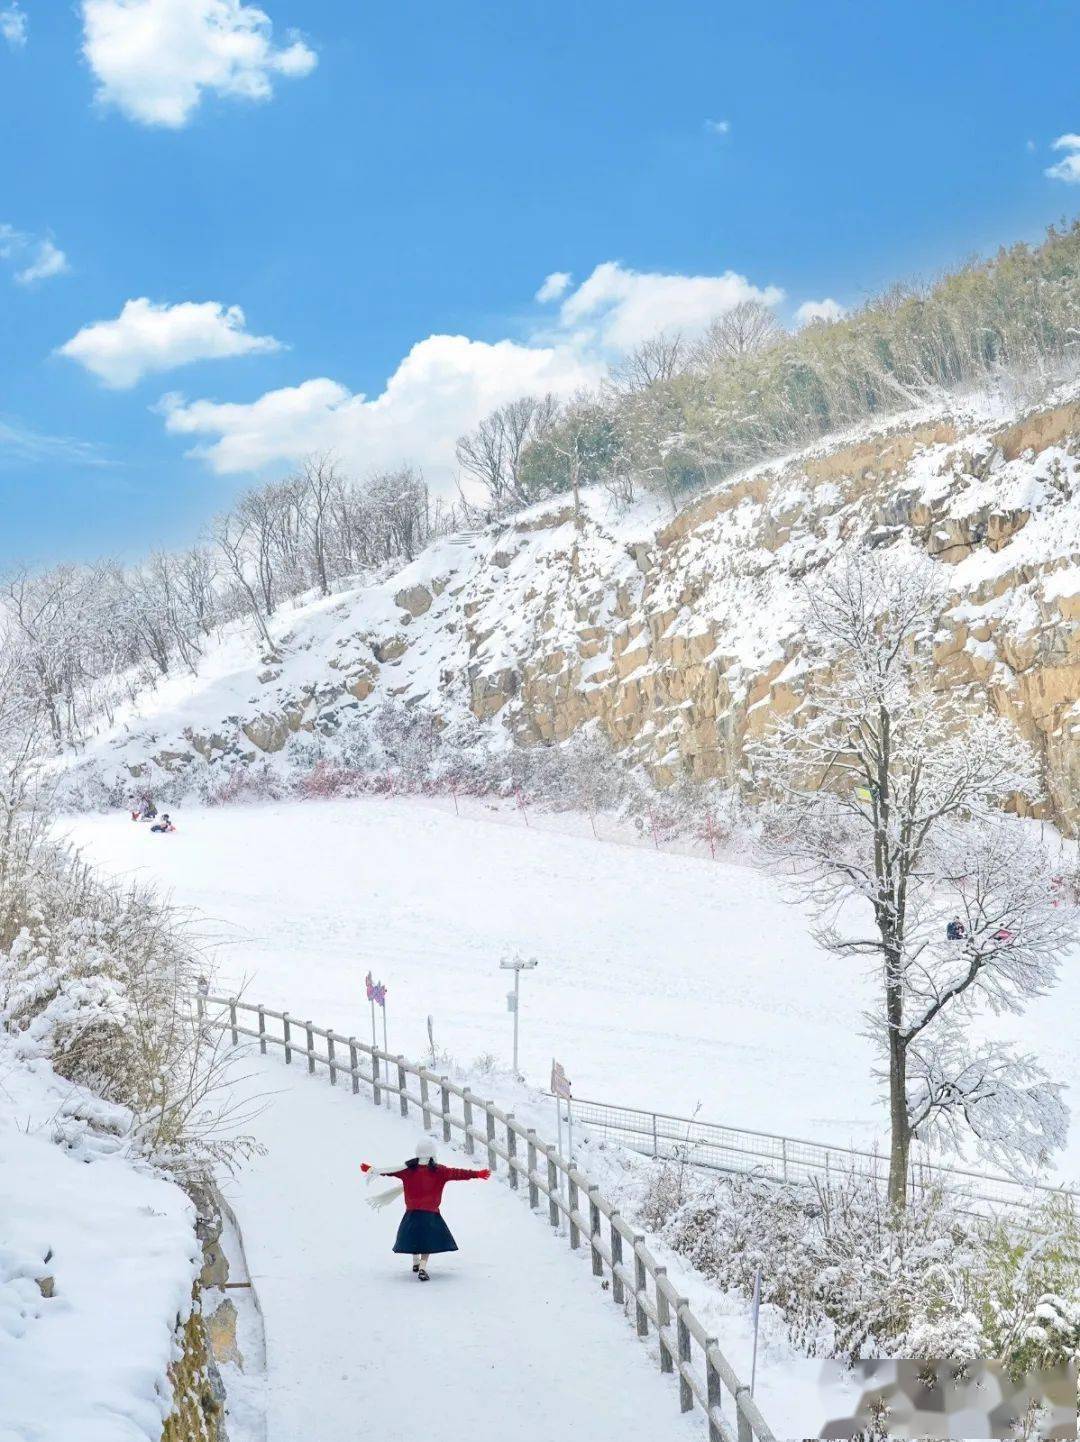 九皇山雪景图片图片